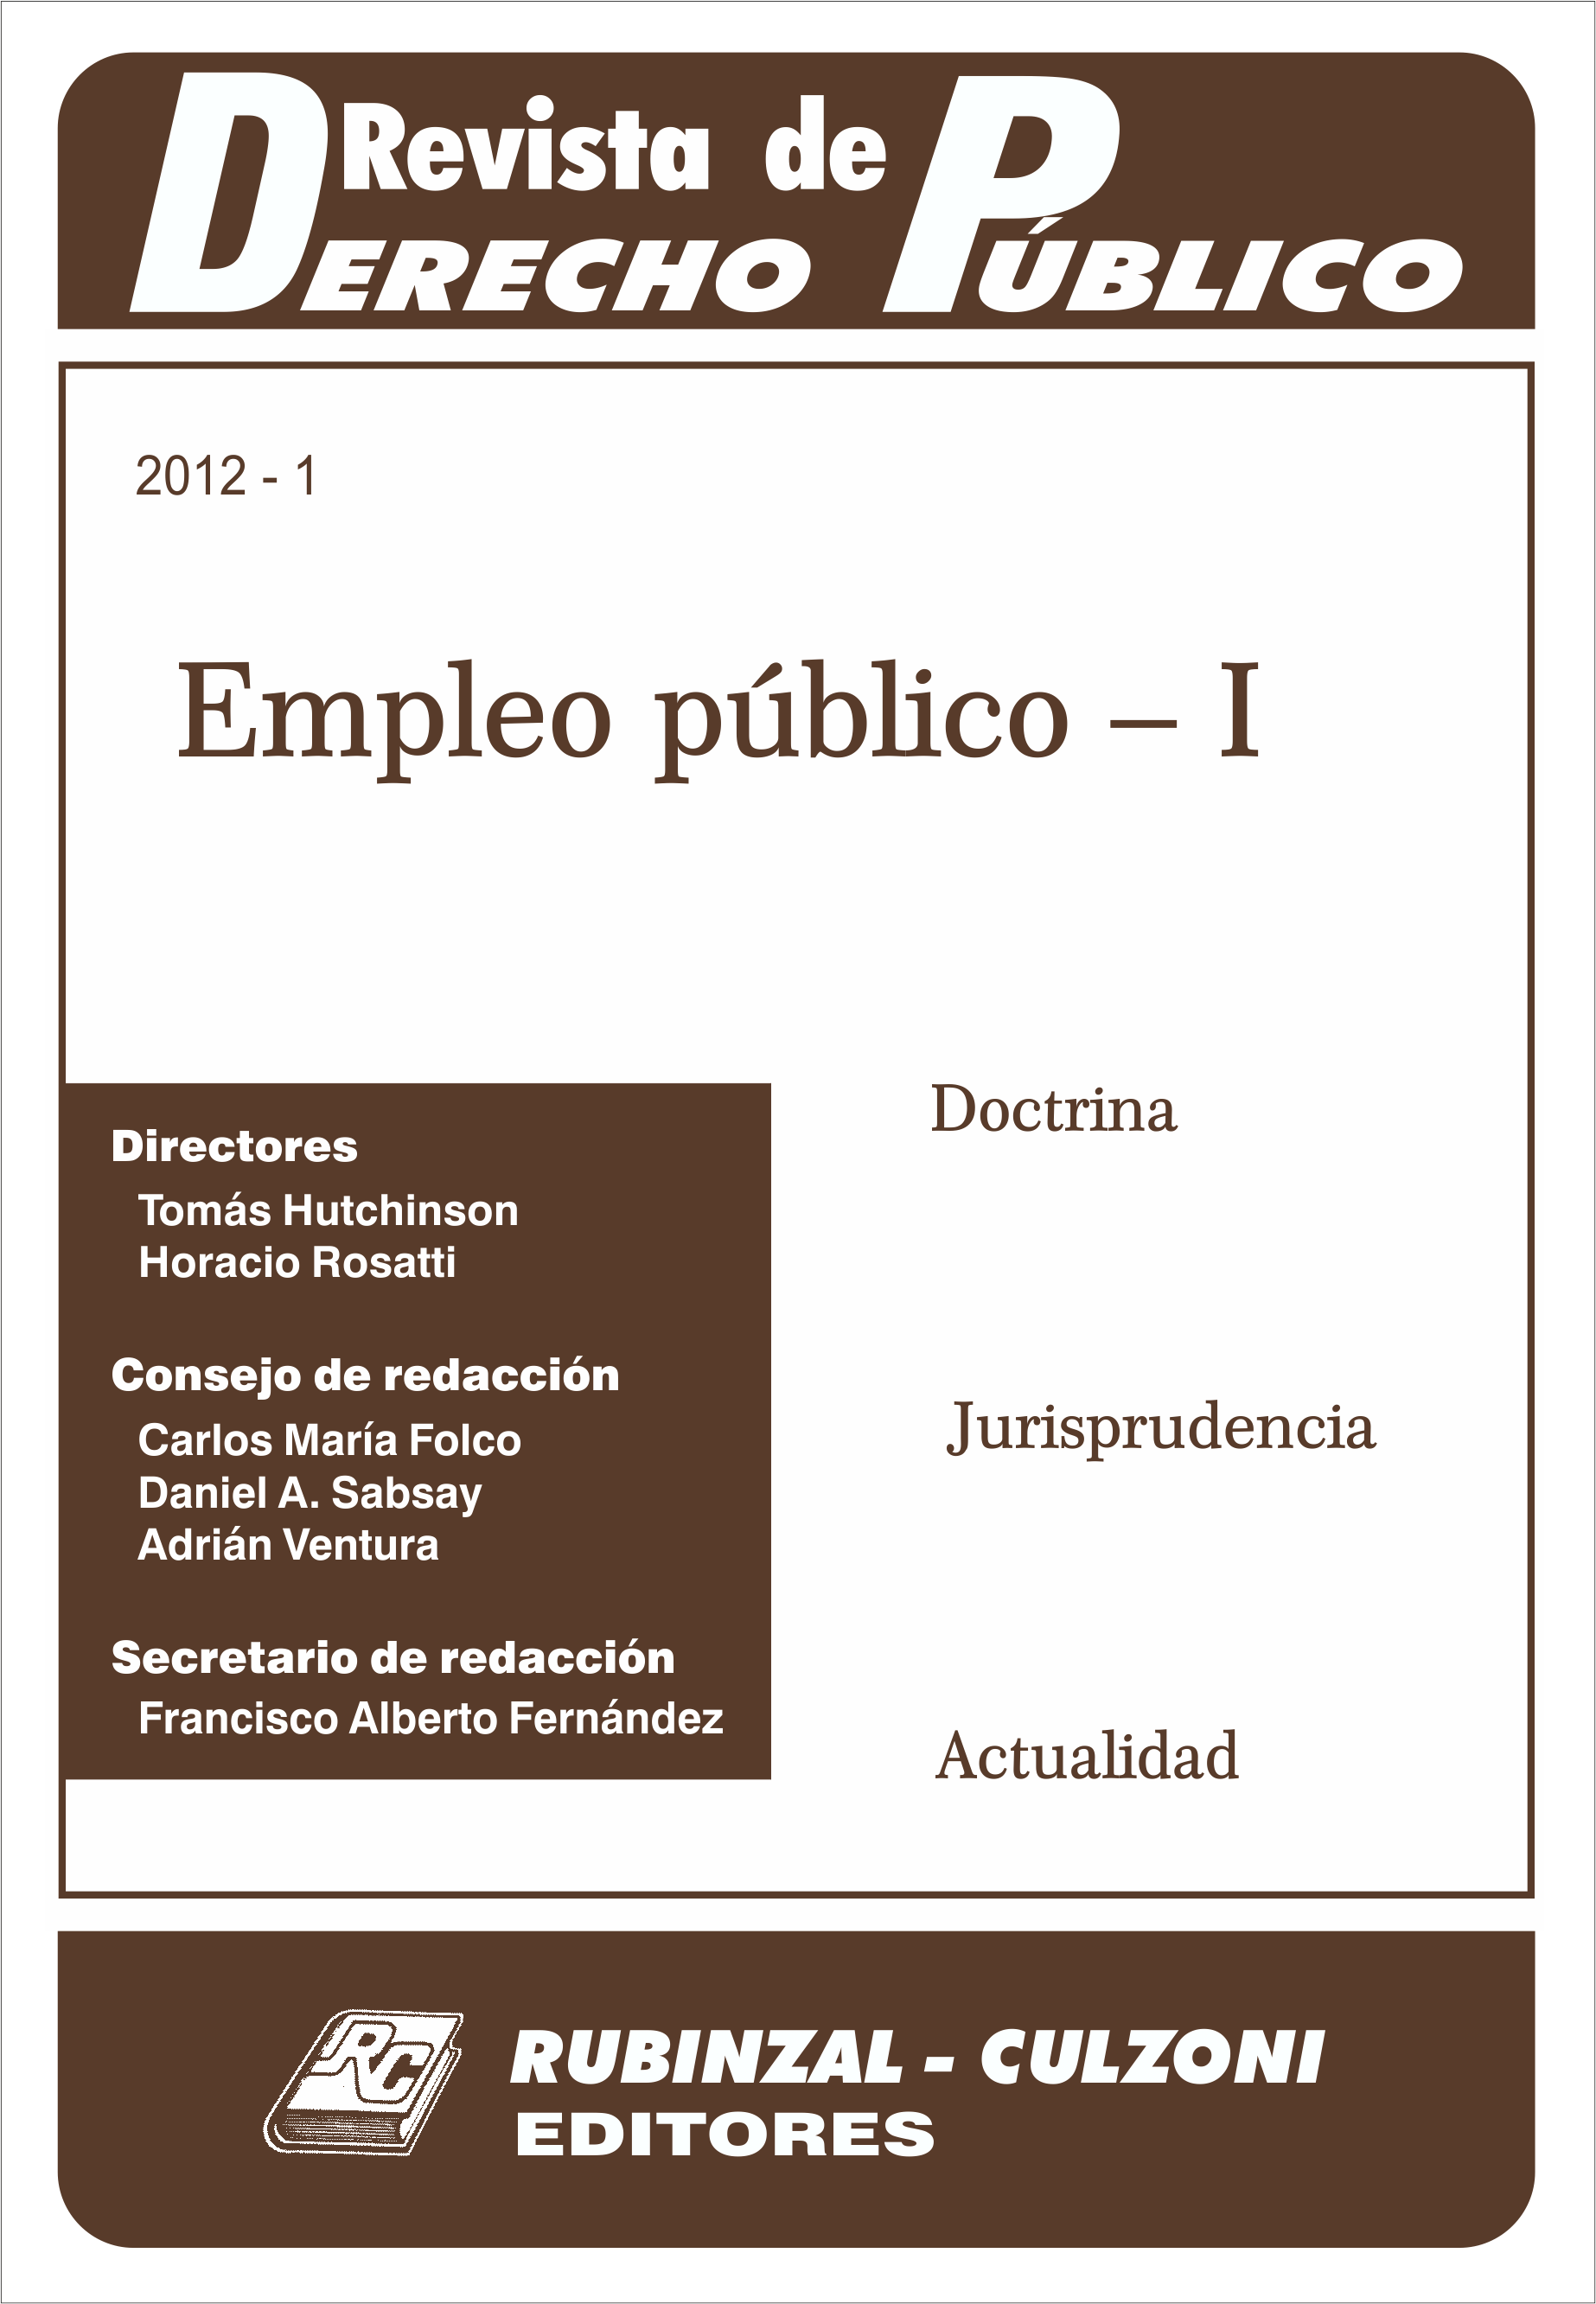 Revista de Derecho Público - Empleo público - I